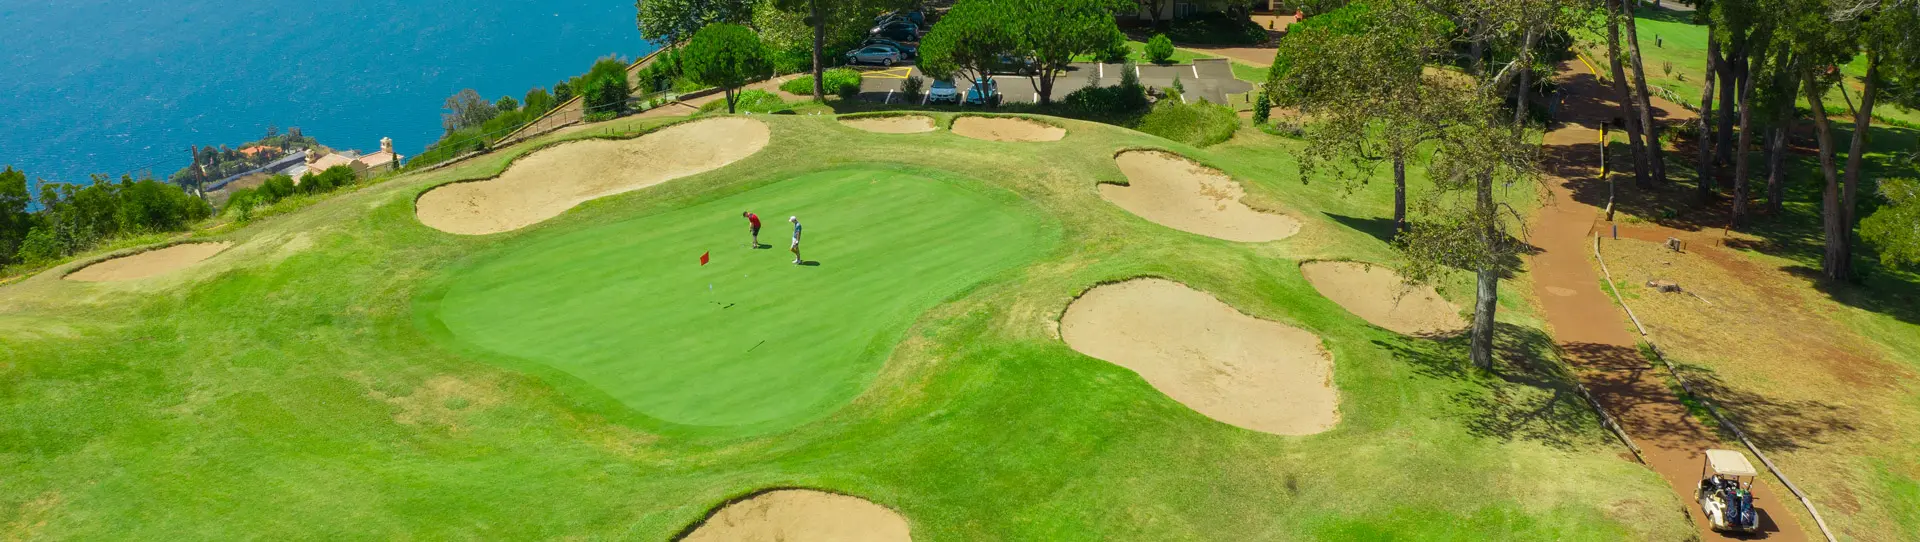 Portugal golf courses - Palheiro Golf Course - Photo 1